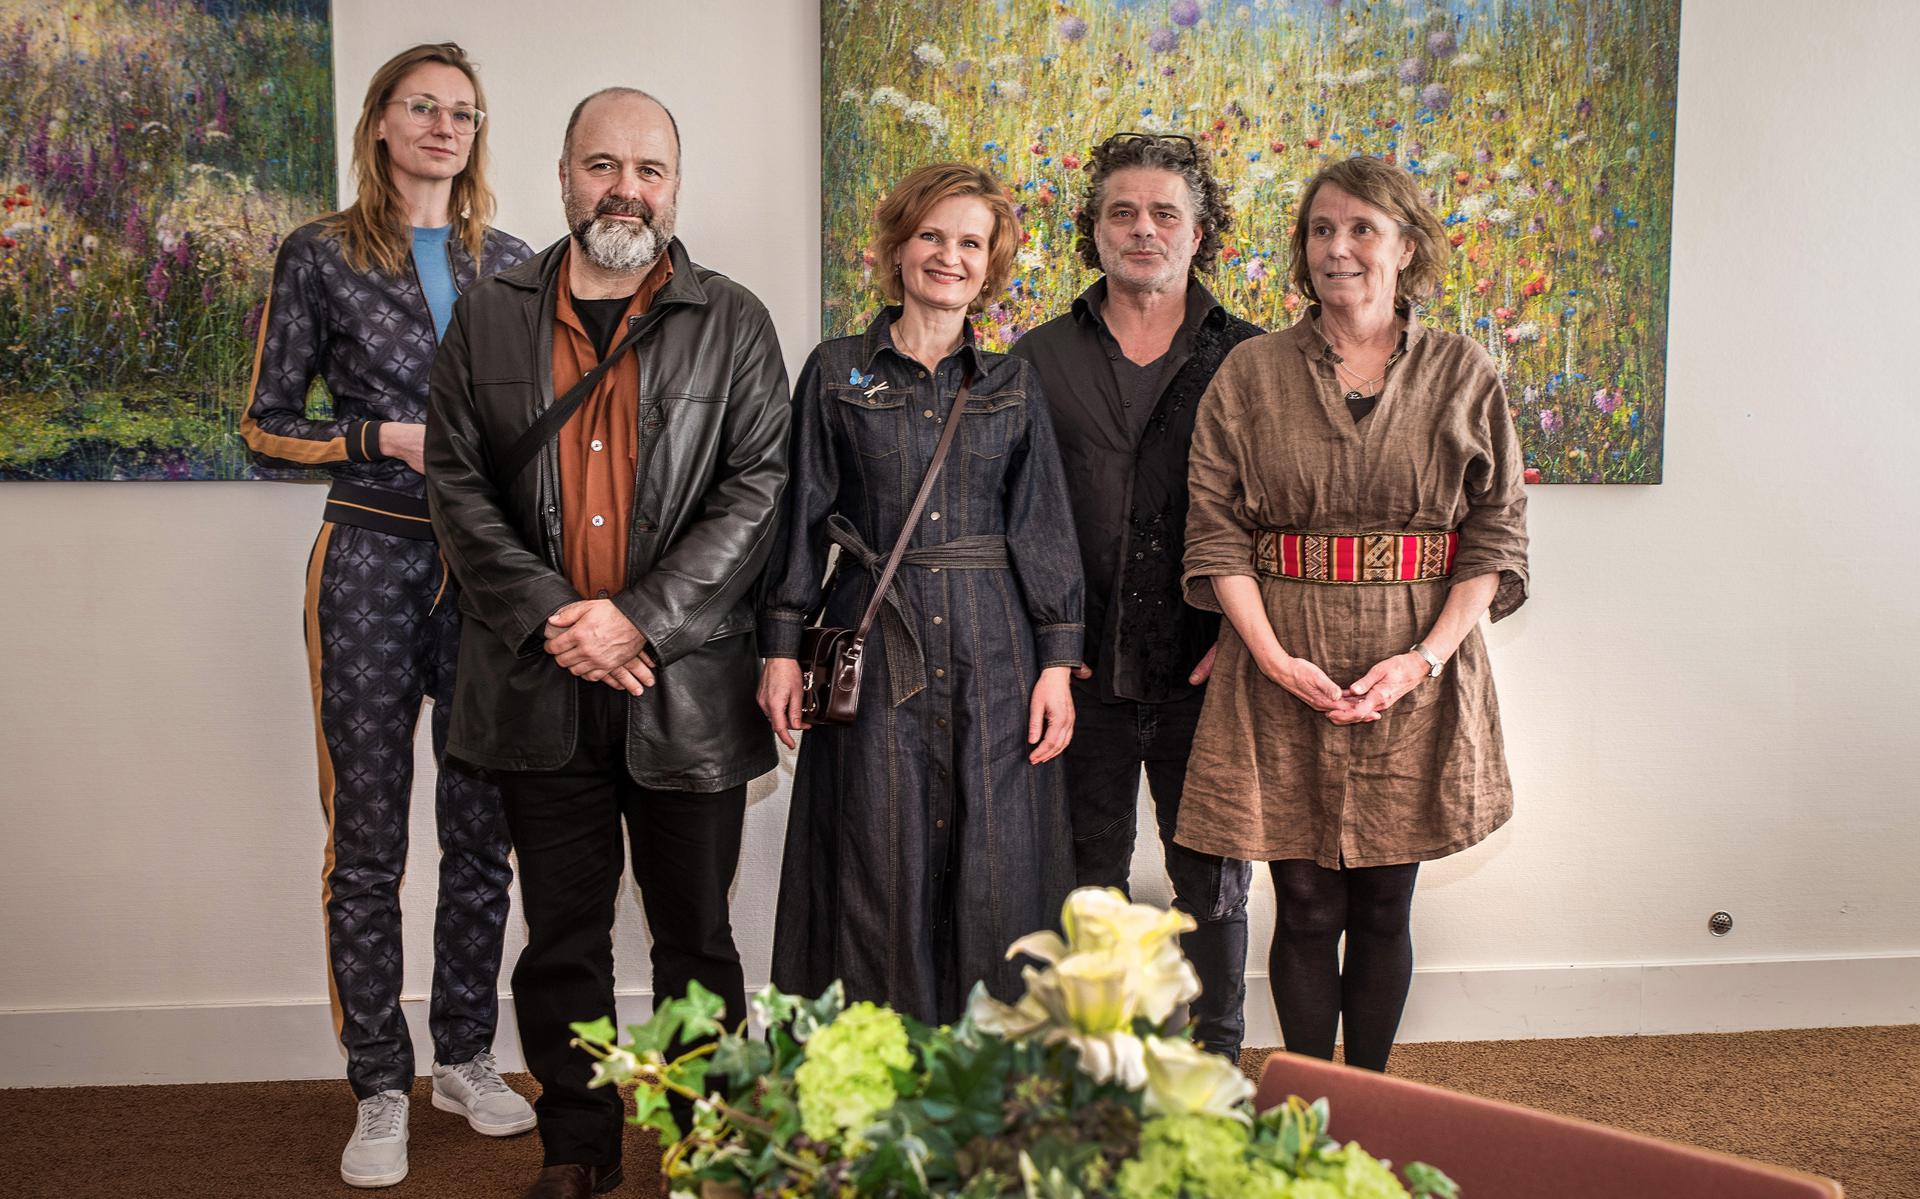 Vijf deelnemende kunstenaars tijdens de vernissage van de expositie 'Flower Power' in het Stedelijk Museum Meppel. V.l.n.r. Annegret Kellner, Helmut Dick, Ala Khonikava, Michael van Emde Boas en Kaat Schulte.